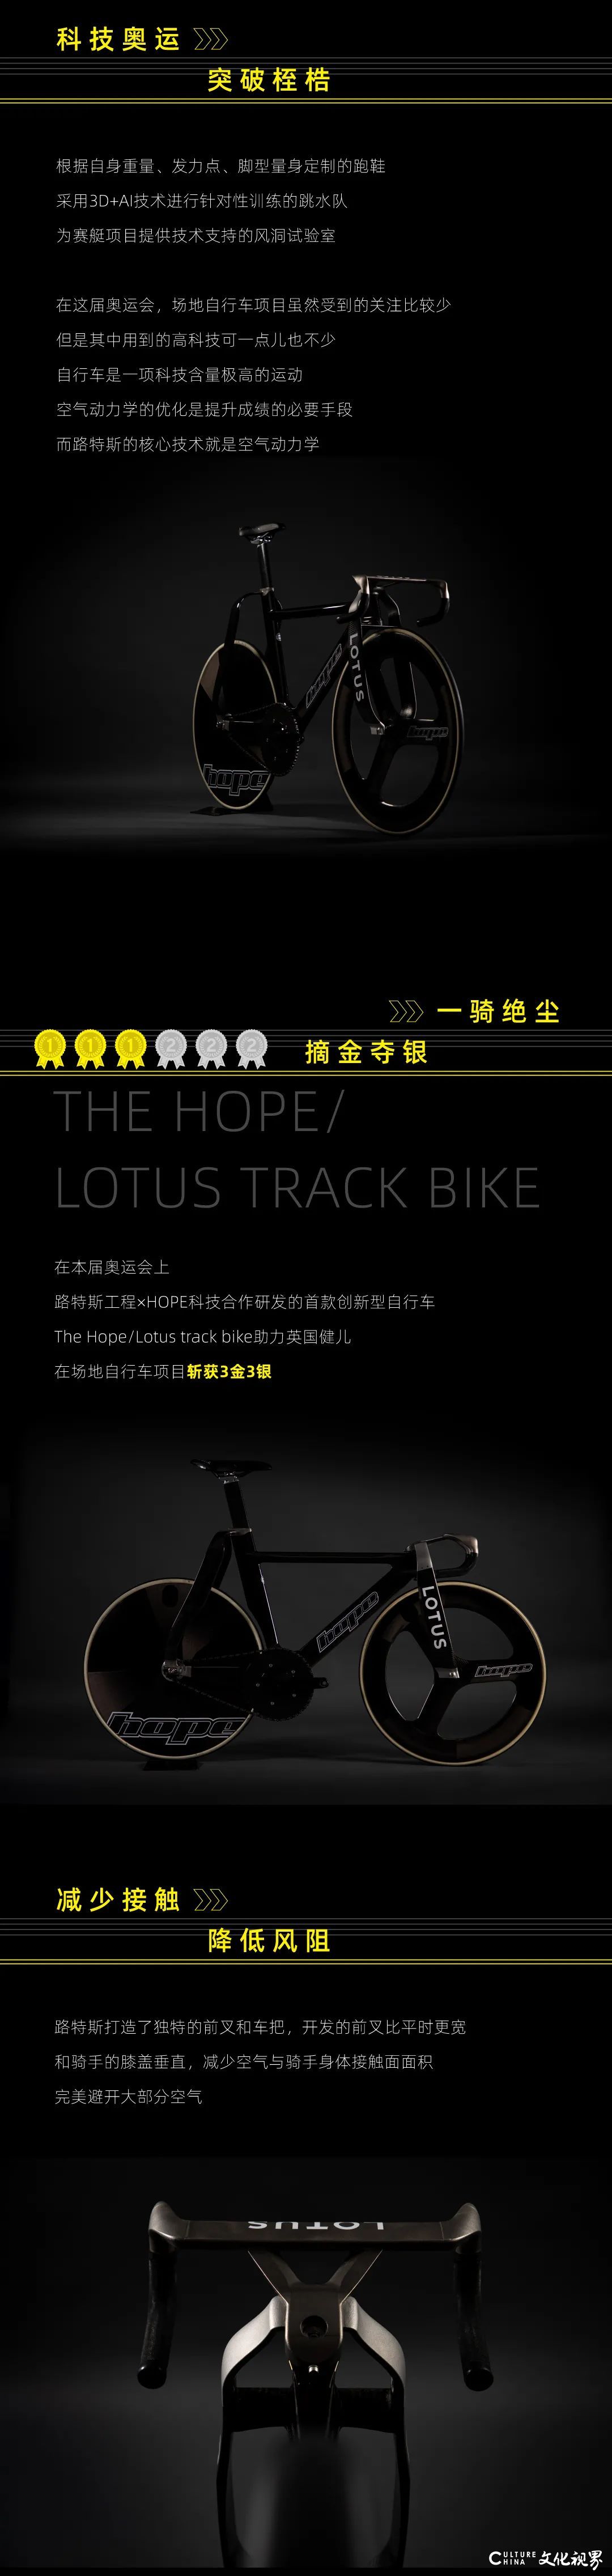 路特斯首款创新型自行车闪耀东京奥运会，助力英国健儿斩获3金3银